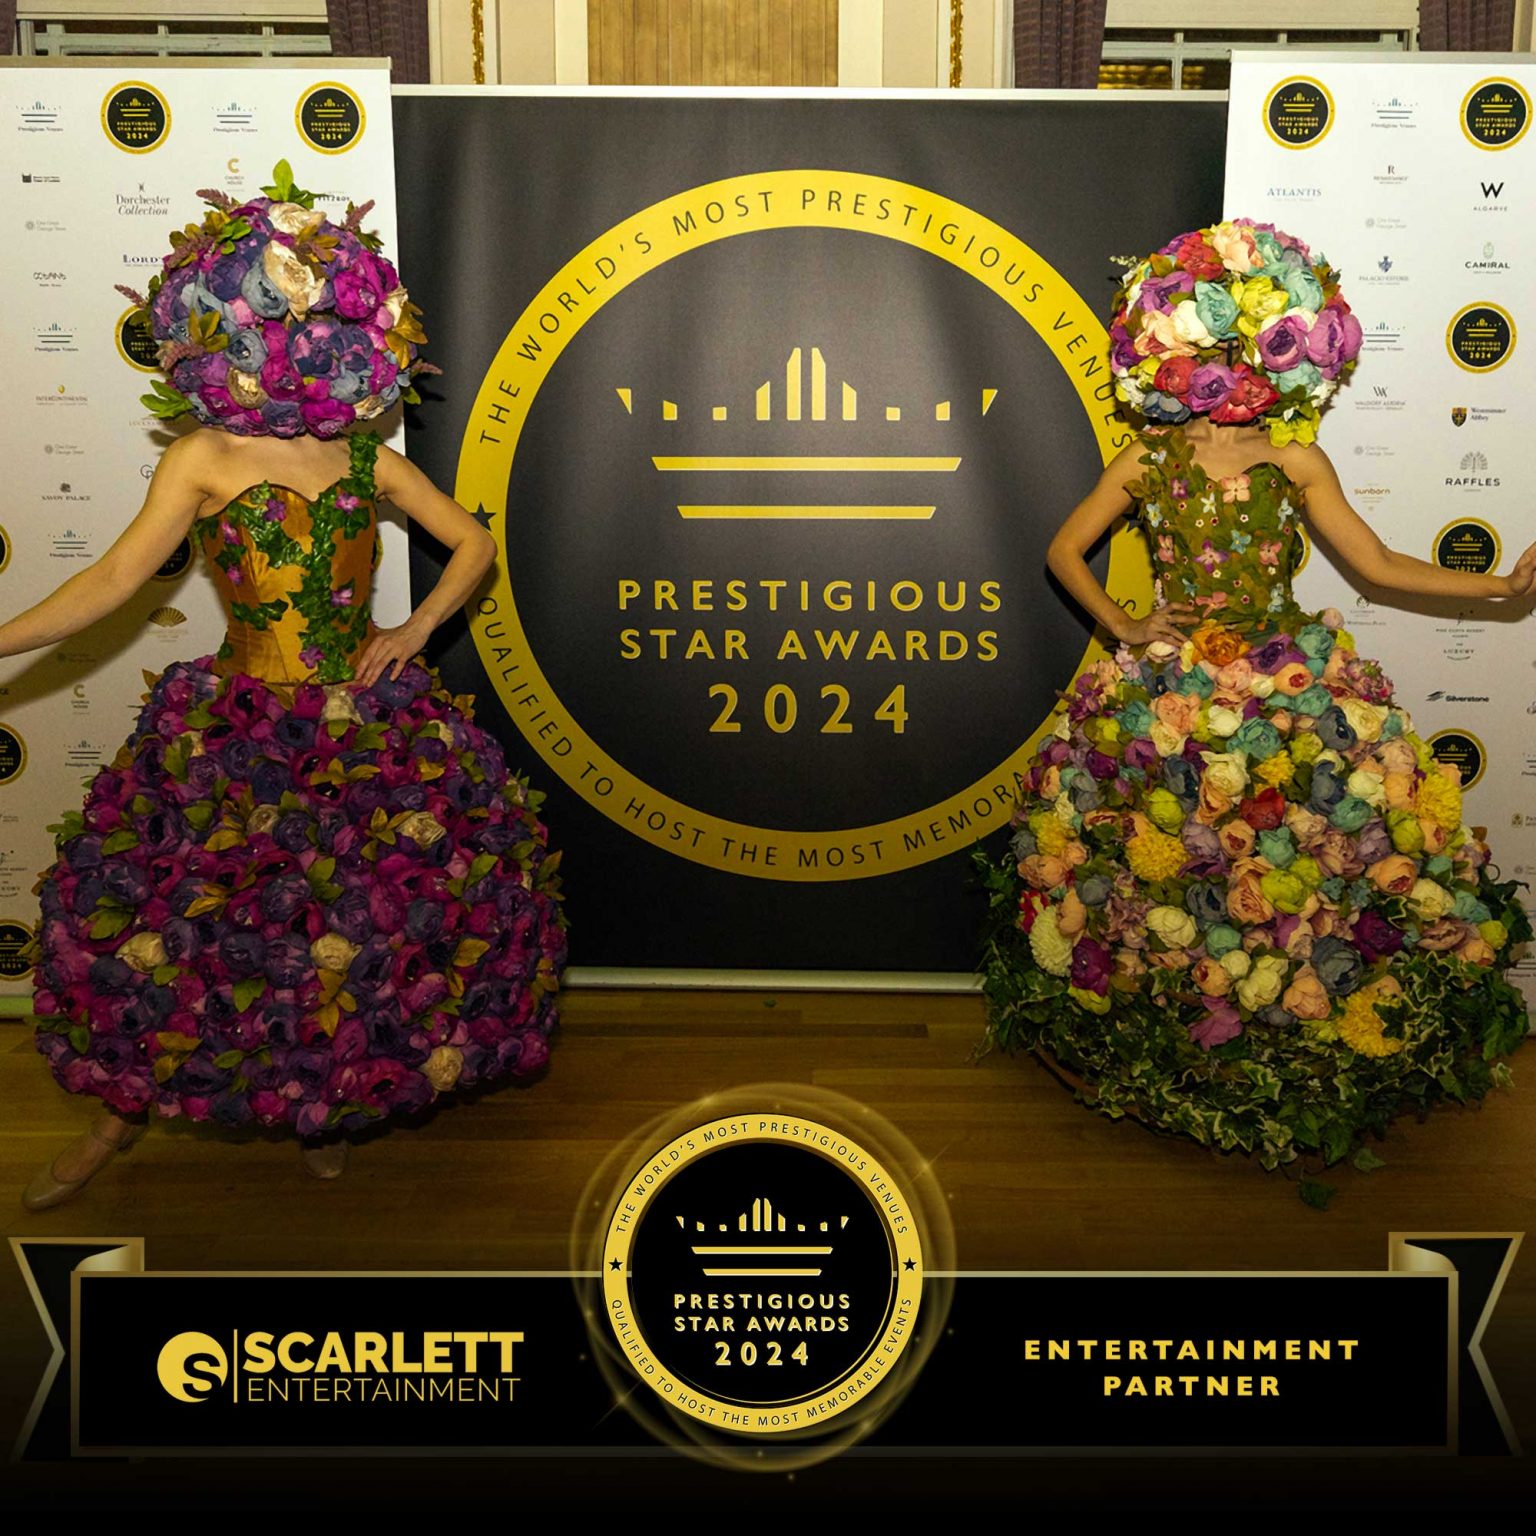 Entertainment Partner 2024   Scarlett Entertainment, Prestigious Star Awards